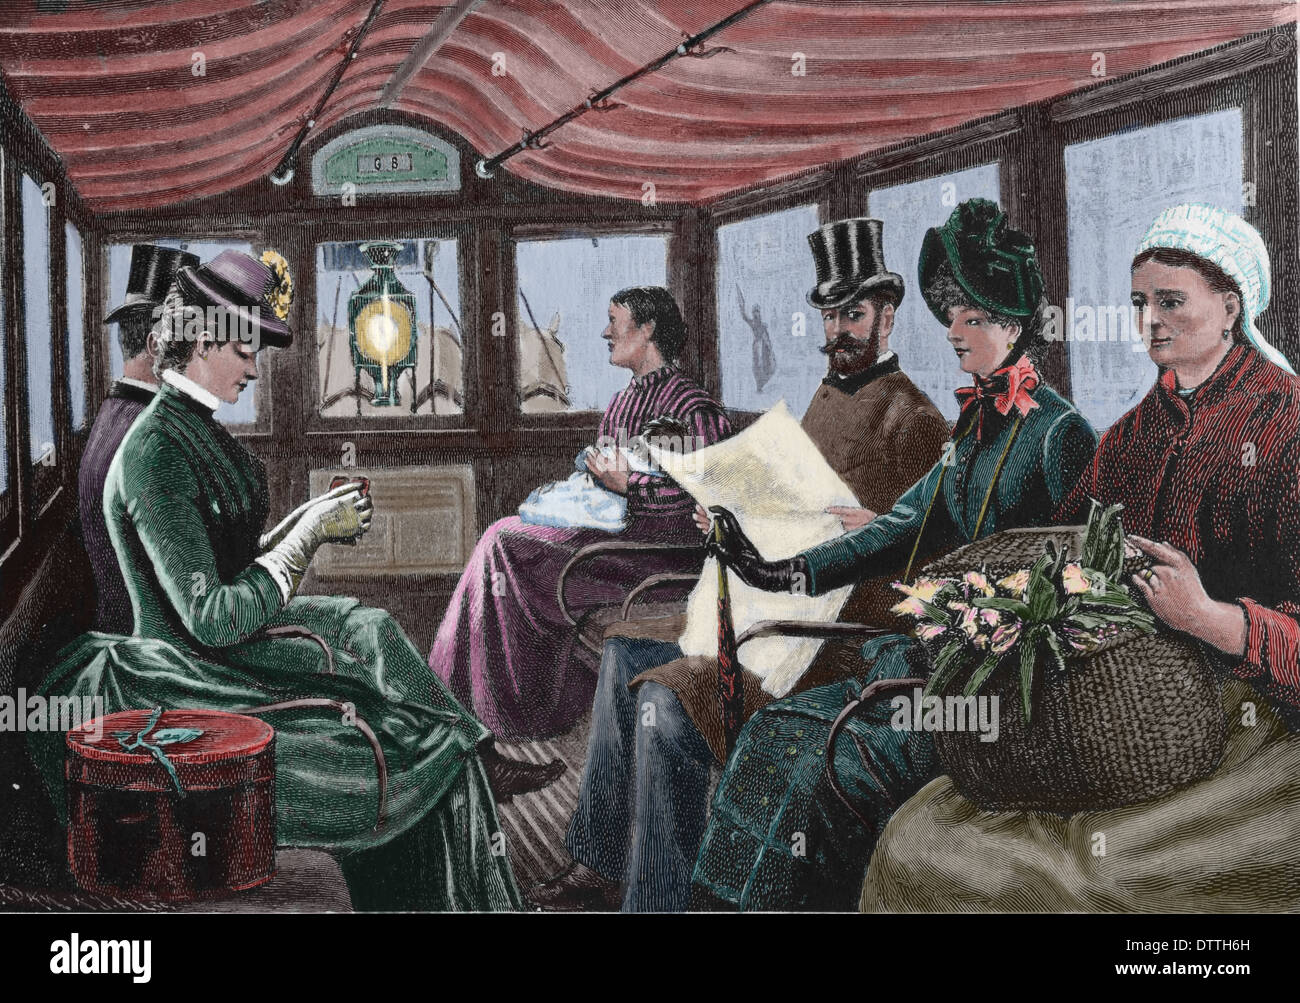 Les véhicules tirés par des chevaux. La gravure. De couleur. 19e siècle. Banque D'Images